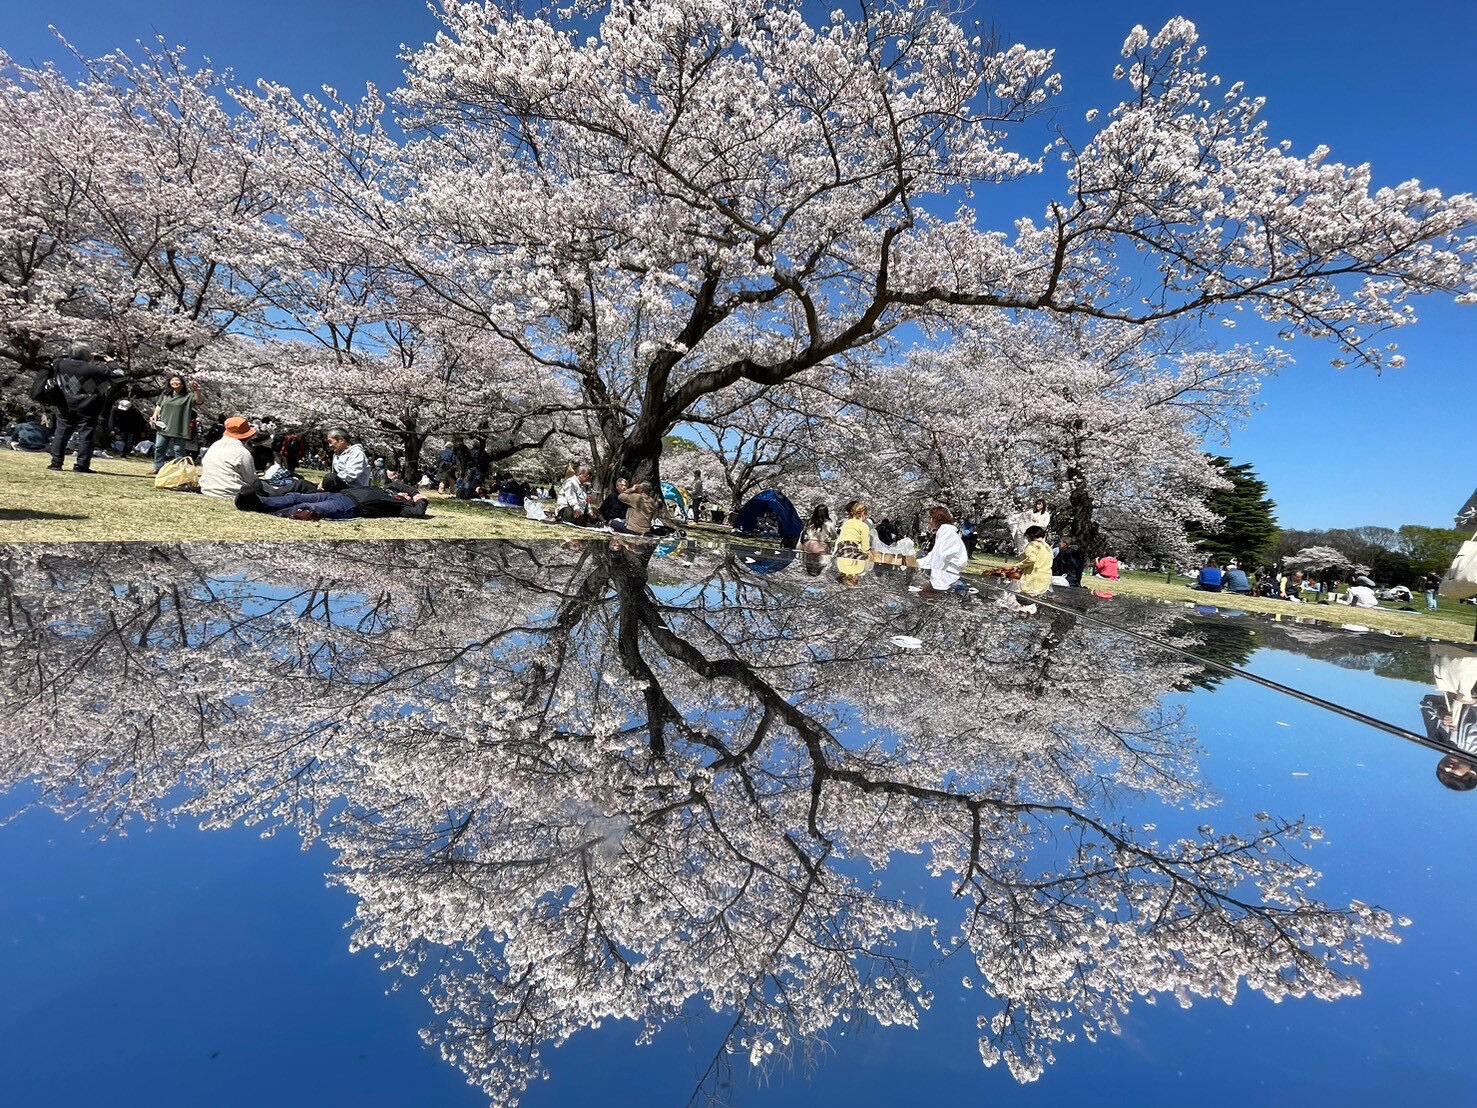 銀板に反射している桜の写真.jpg